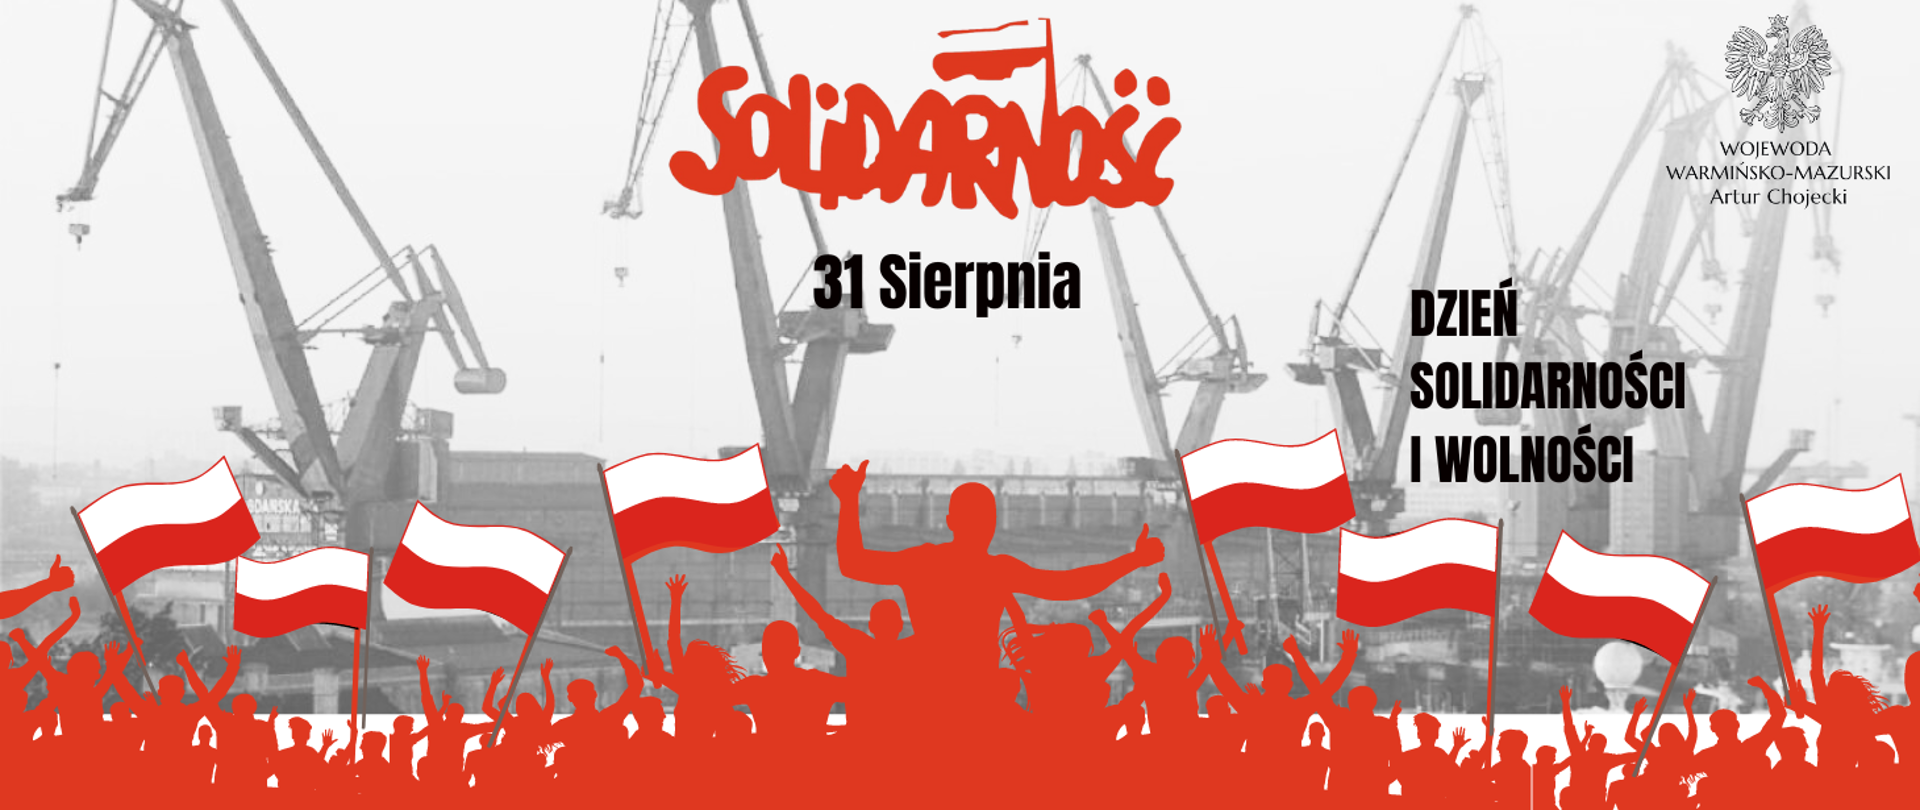 Dziś obchodzimy 43. rocznicę podpisania Porozumień Sierpniowych.
Święto zostało ustanowione w celu upamiętnienia historycznego zrywu Polaków do wolności i niepodległości z 1980 roku.